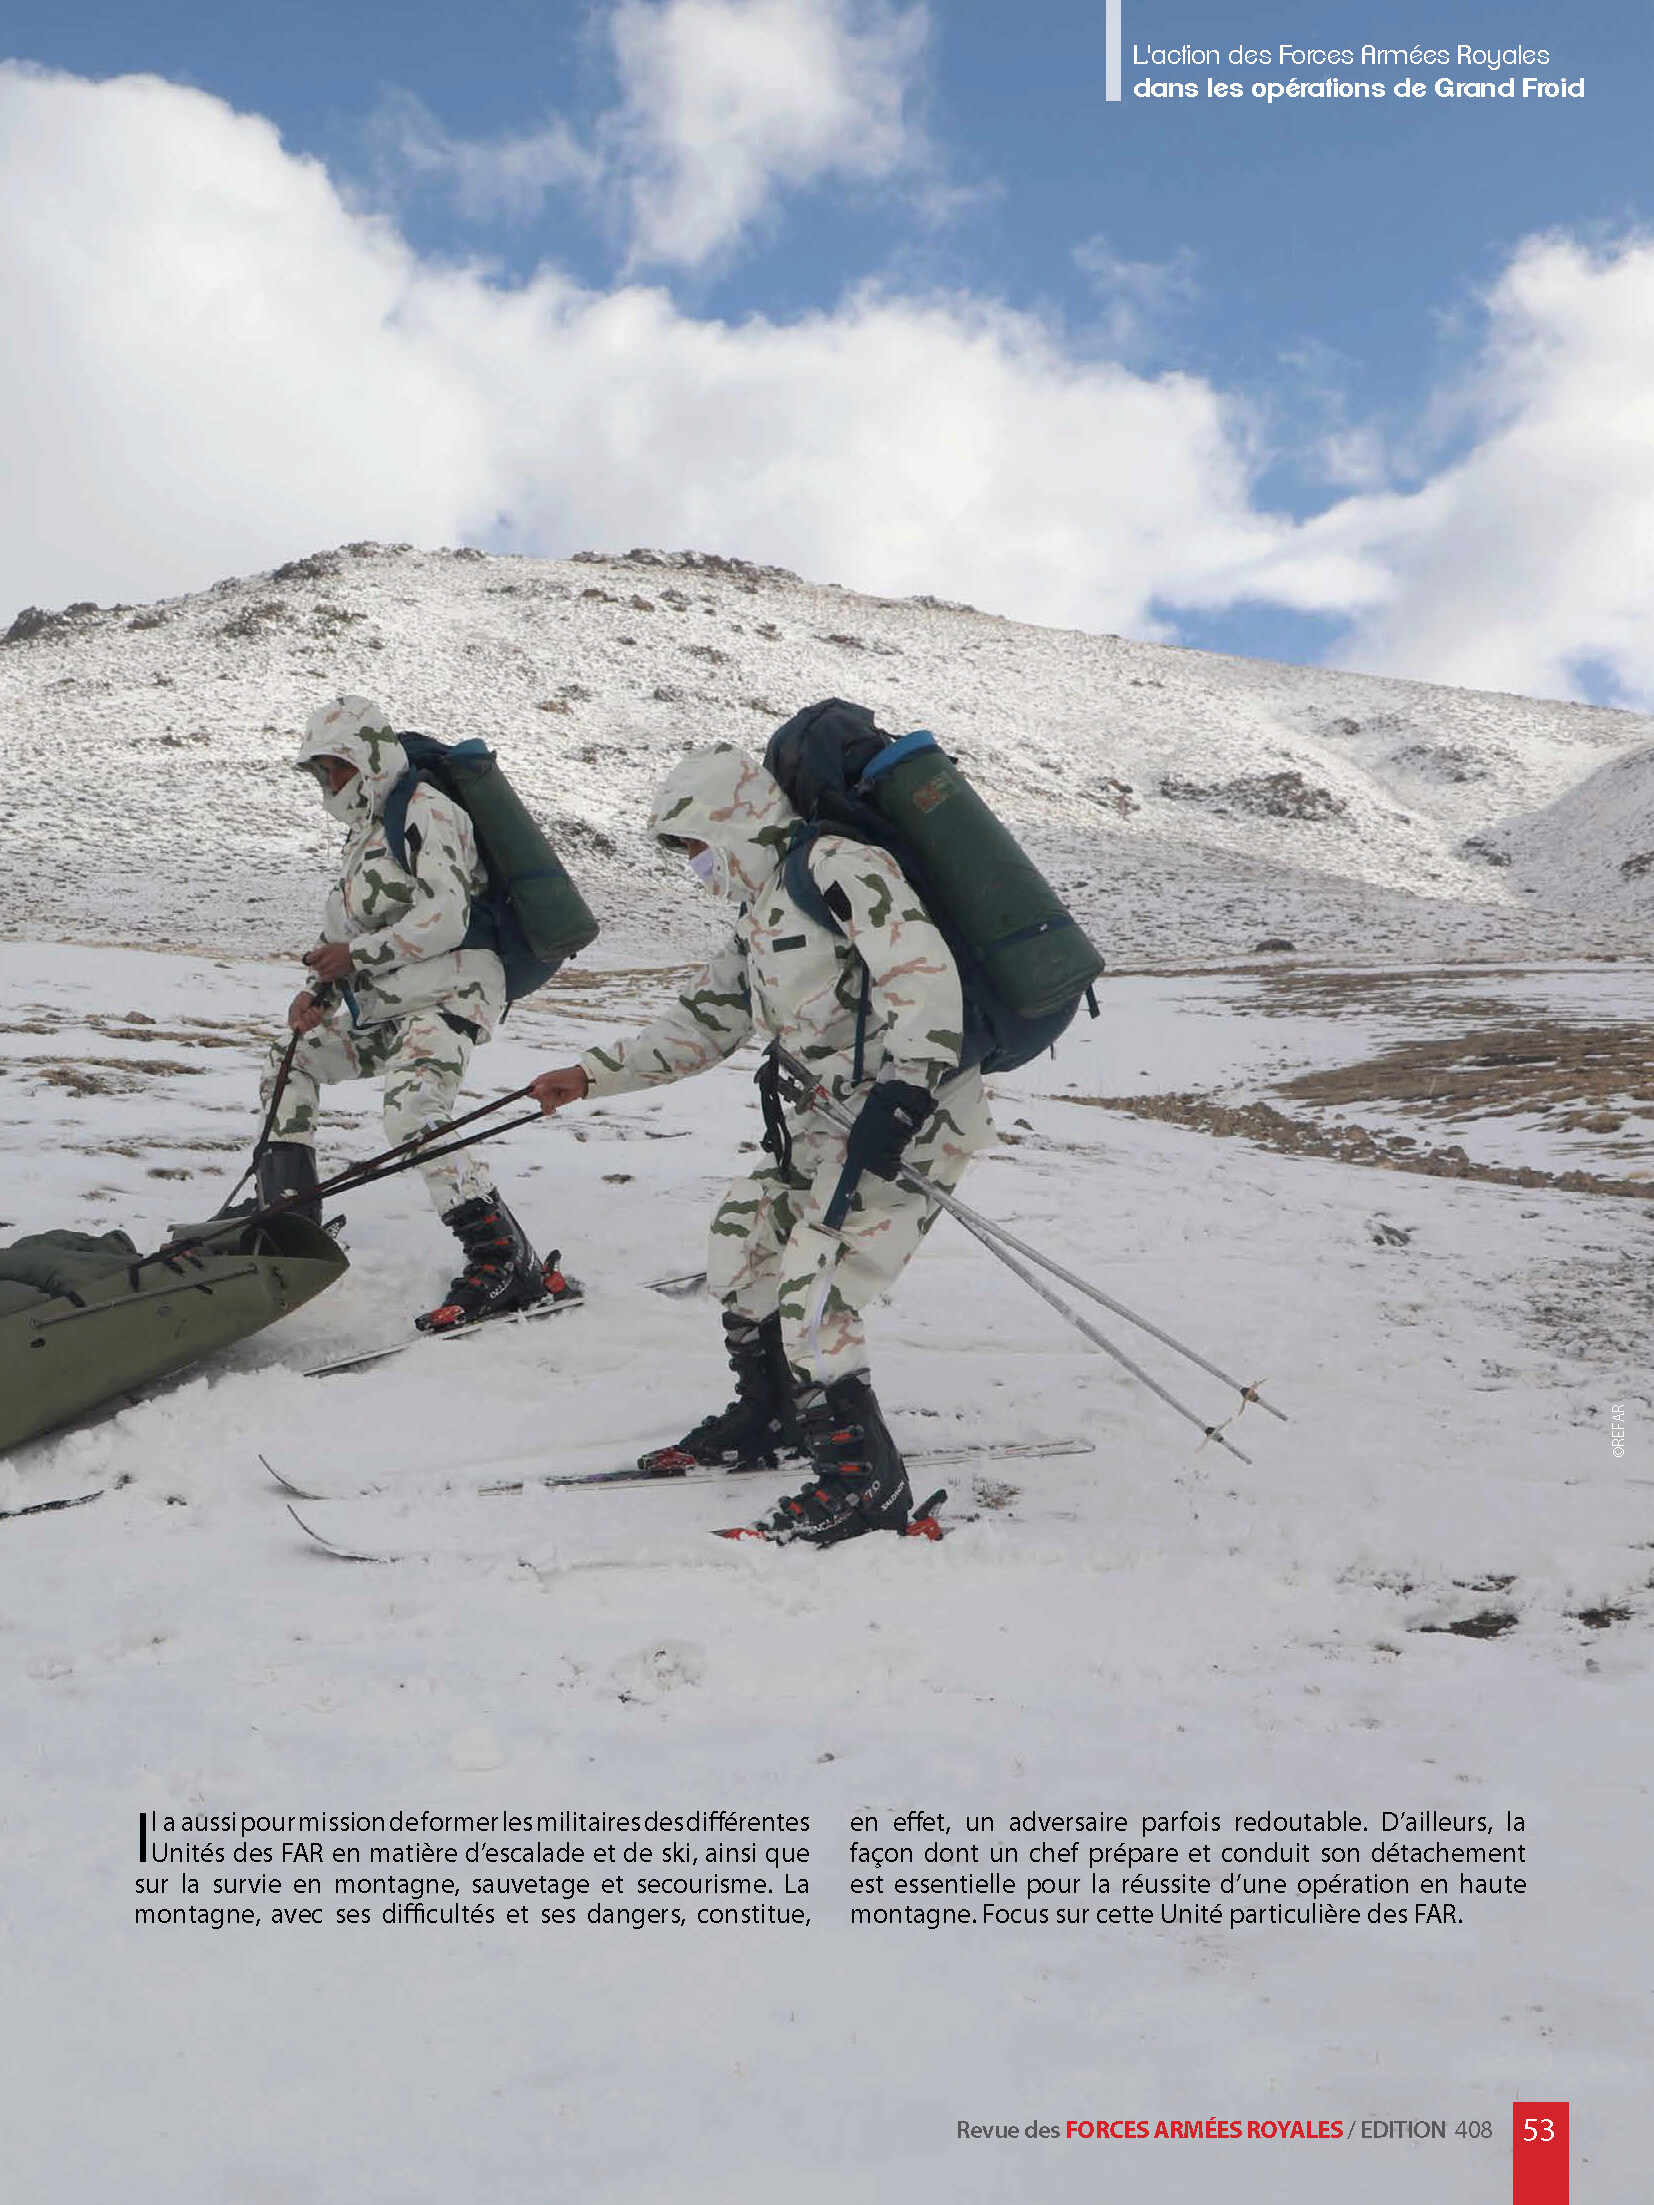 Le Bataillon de Skieurs / Moroccan Skiers Battalion - Page 2 Pages_35